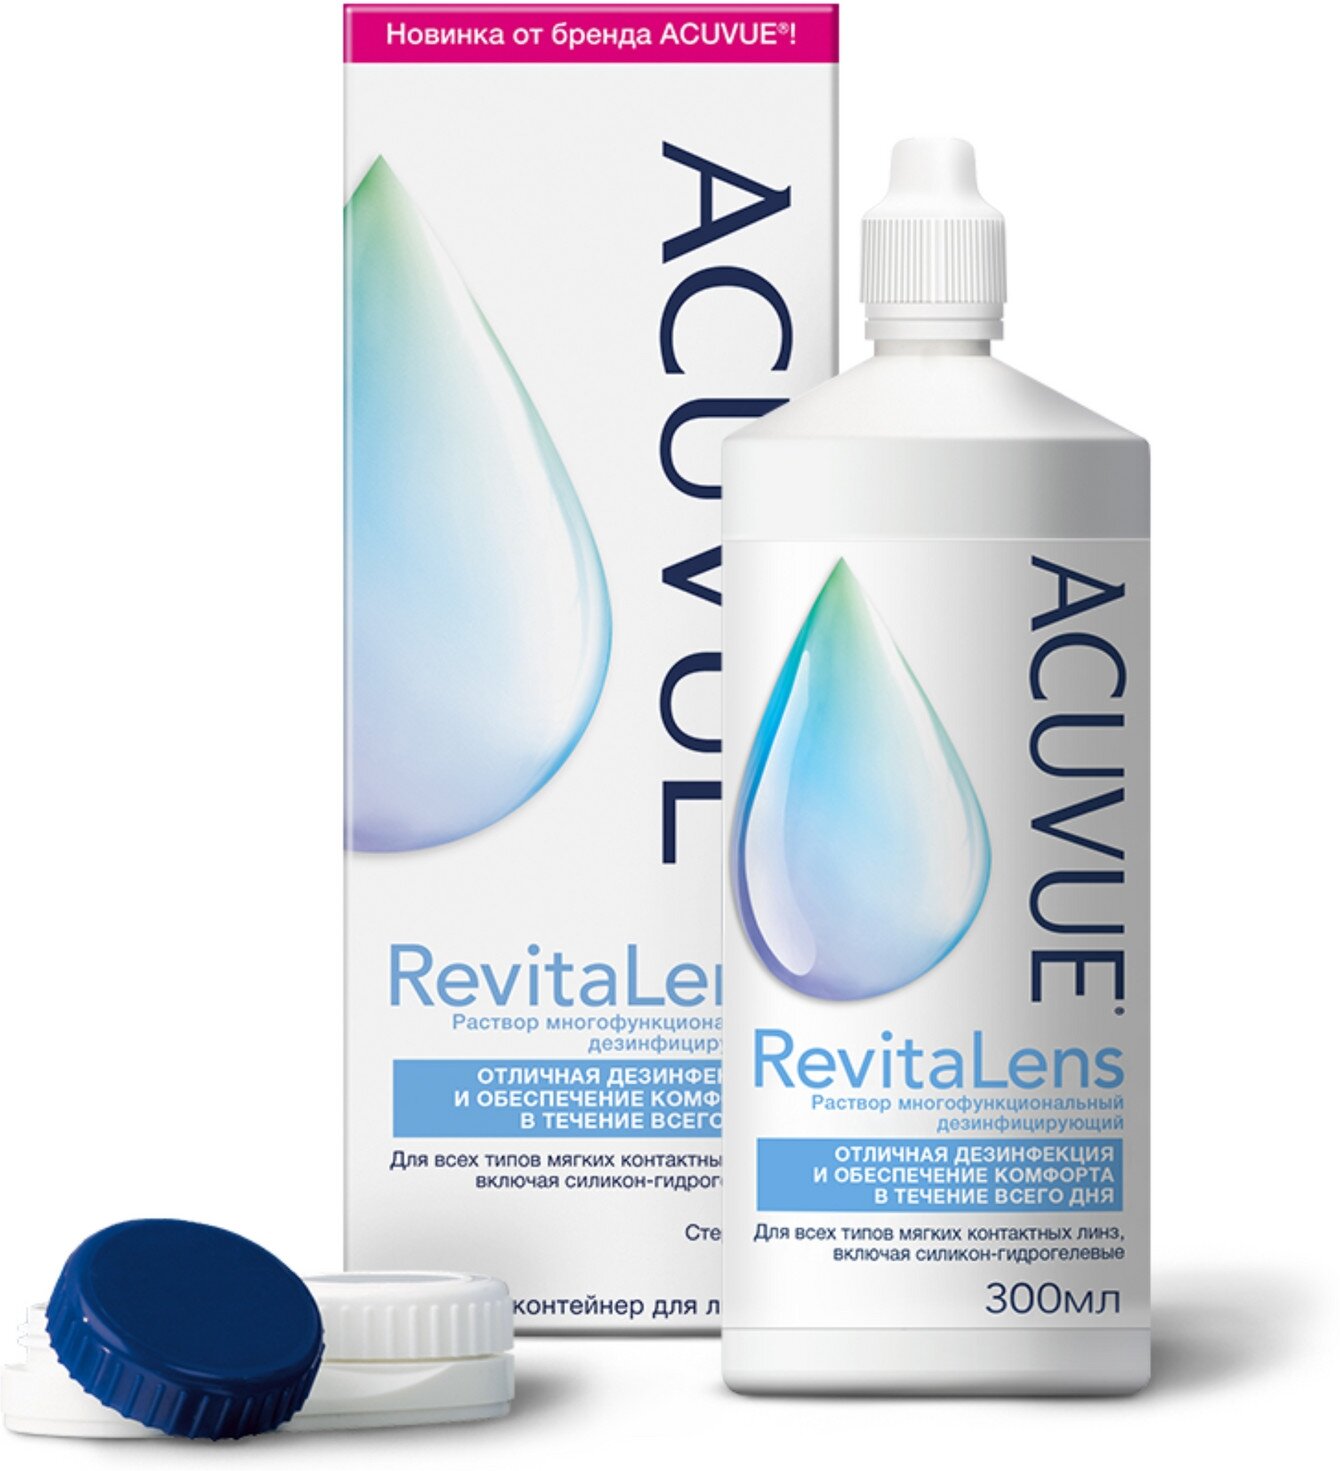     Acuvue RevitaLens (300ml)